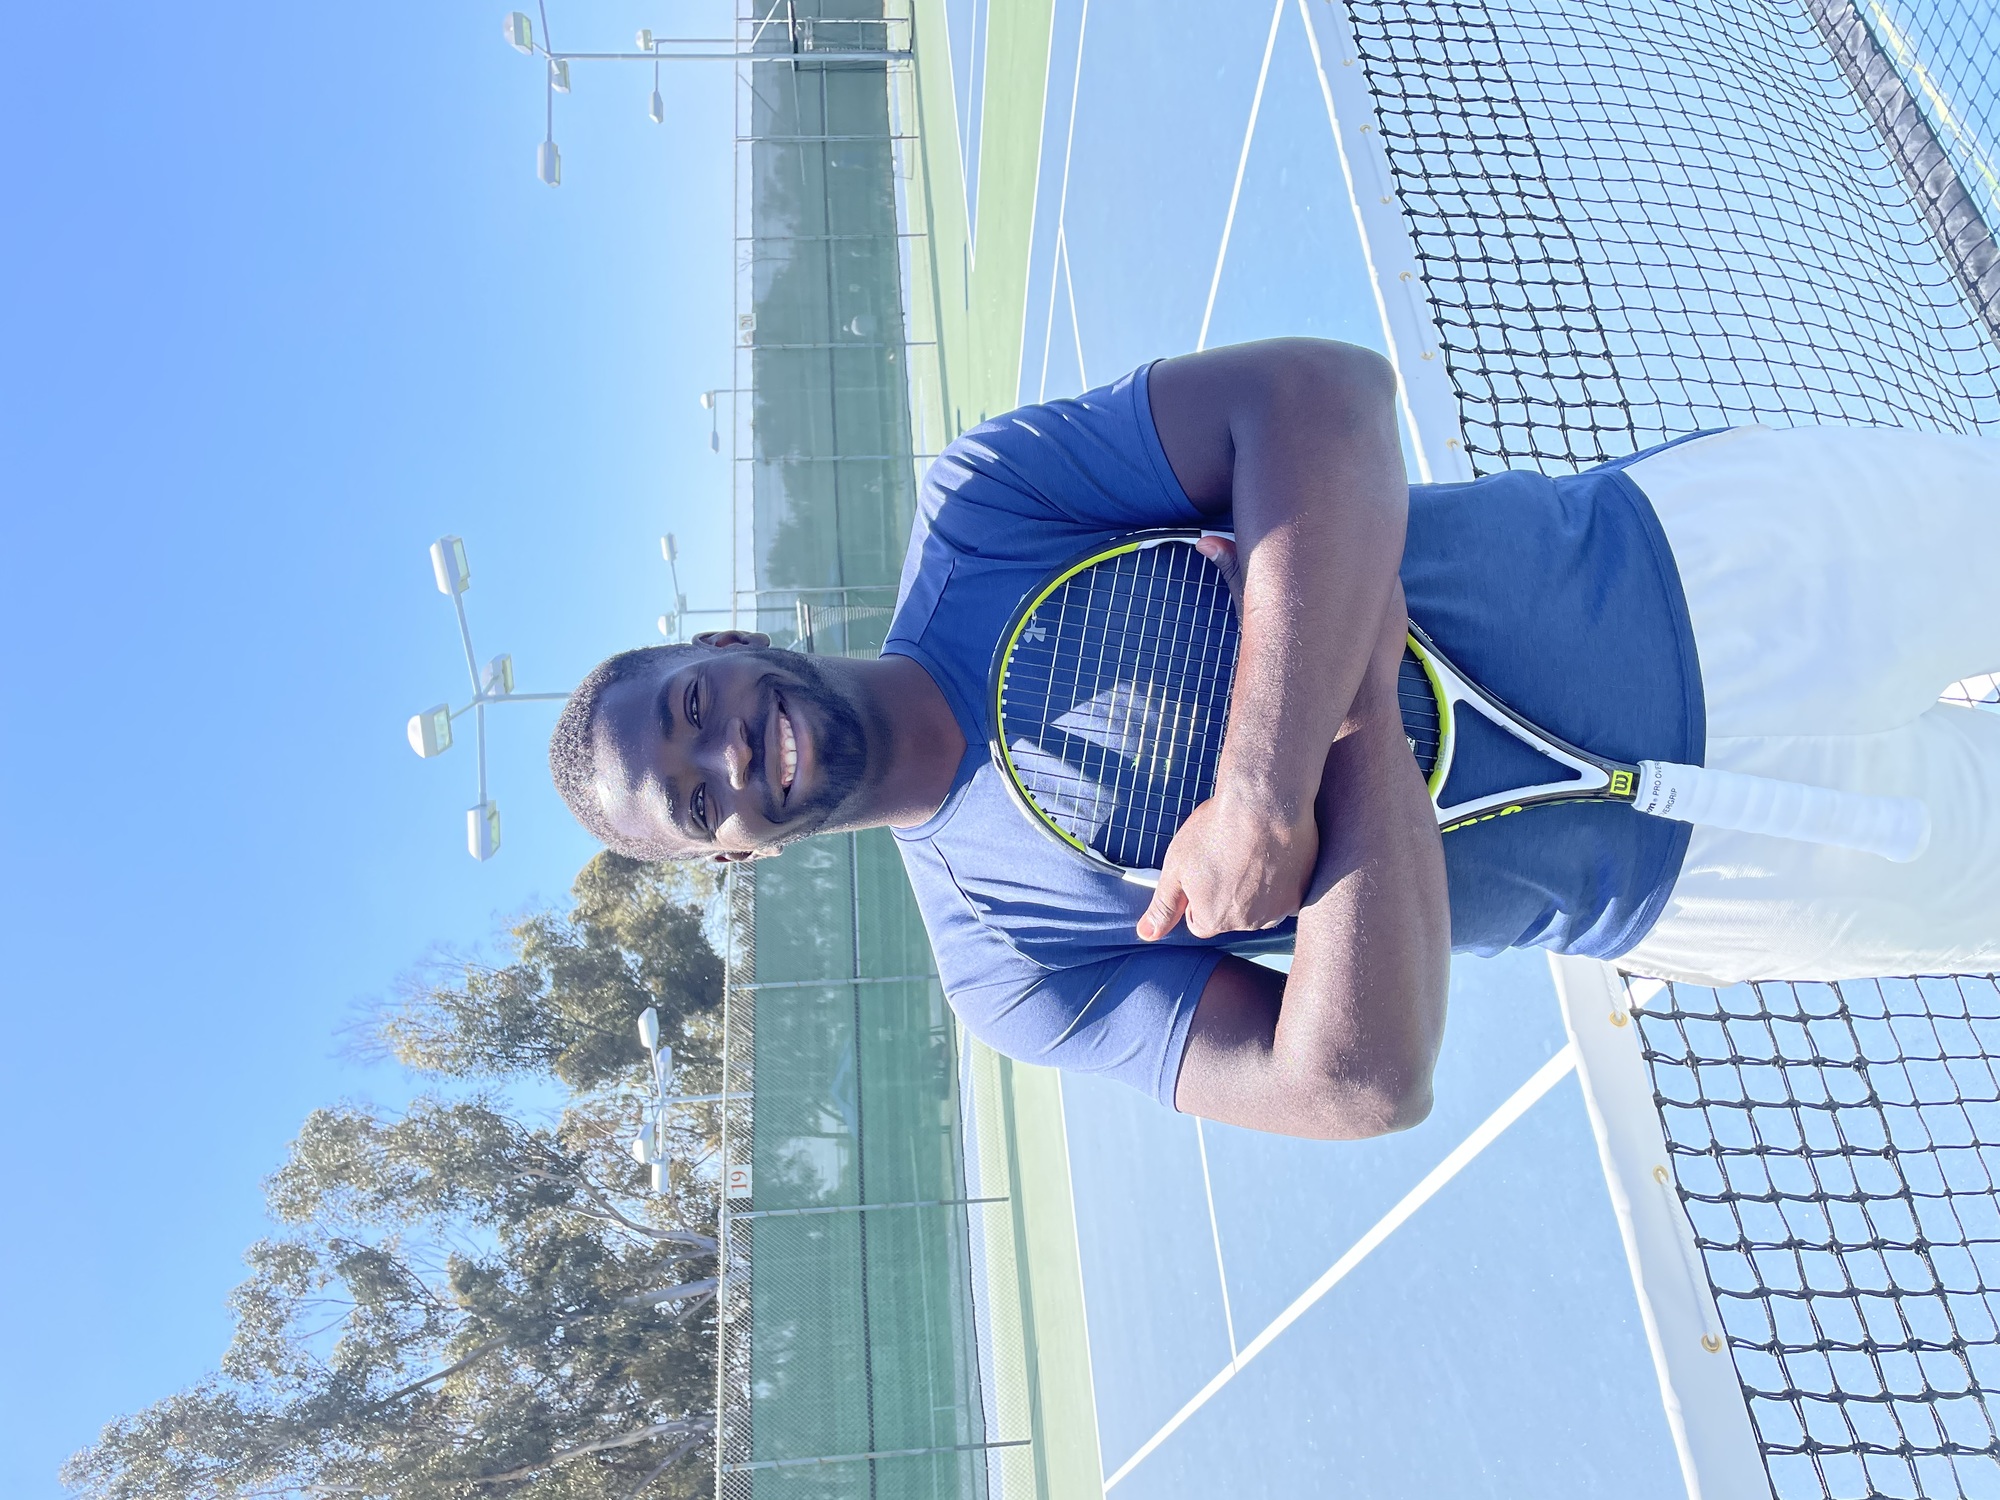 Tobi O. teaches tennis lessons in San Diego, CA